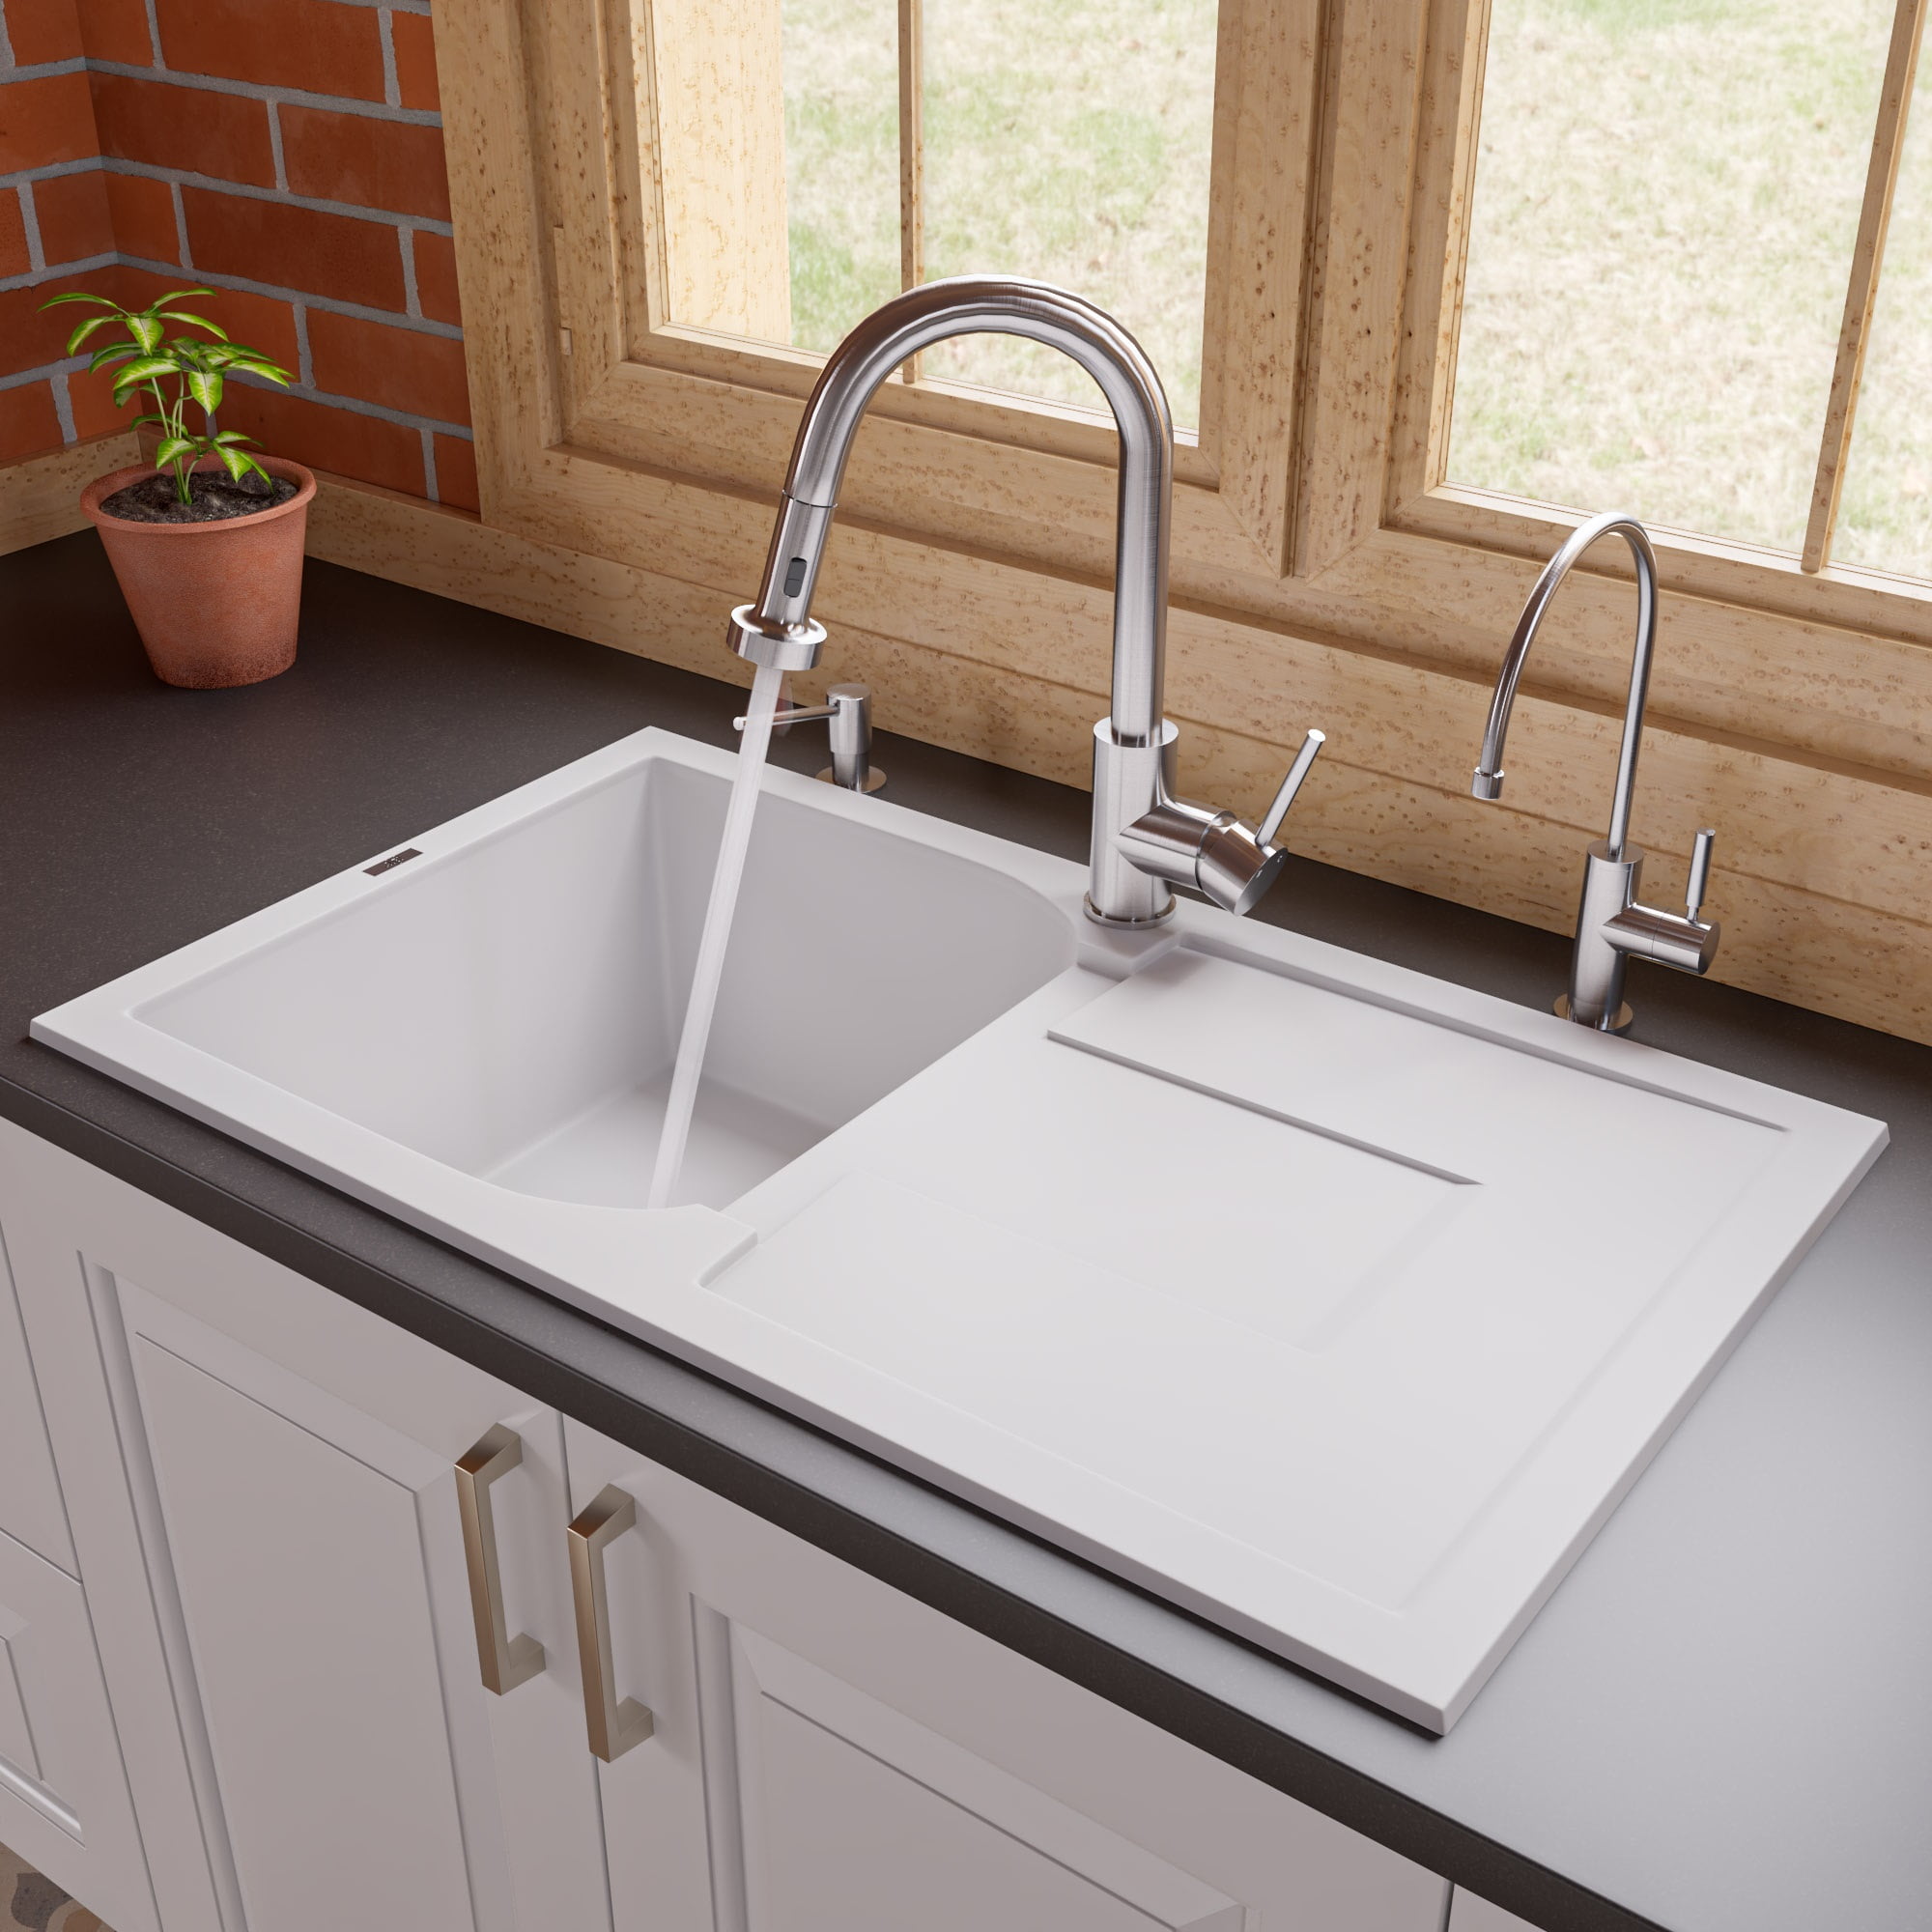 Picture of ALFI brand AB1620DI-W 34 in. Single Bowl Granite Composite Kitchen Sink with Drainboard, White